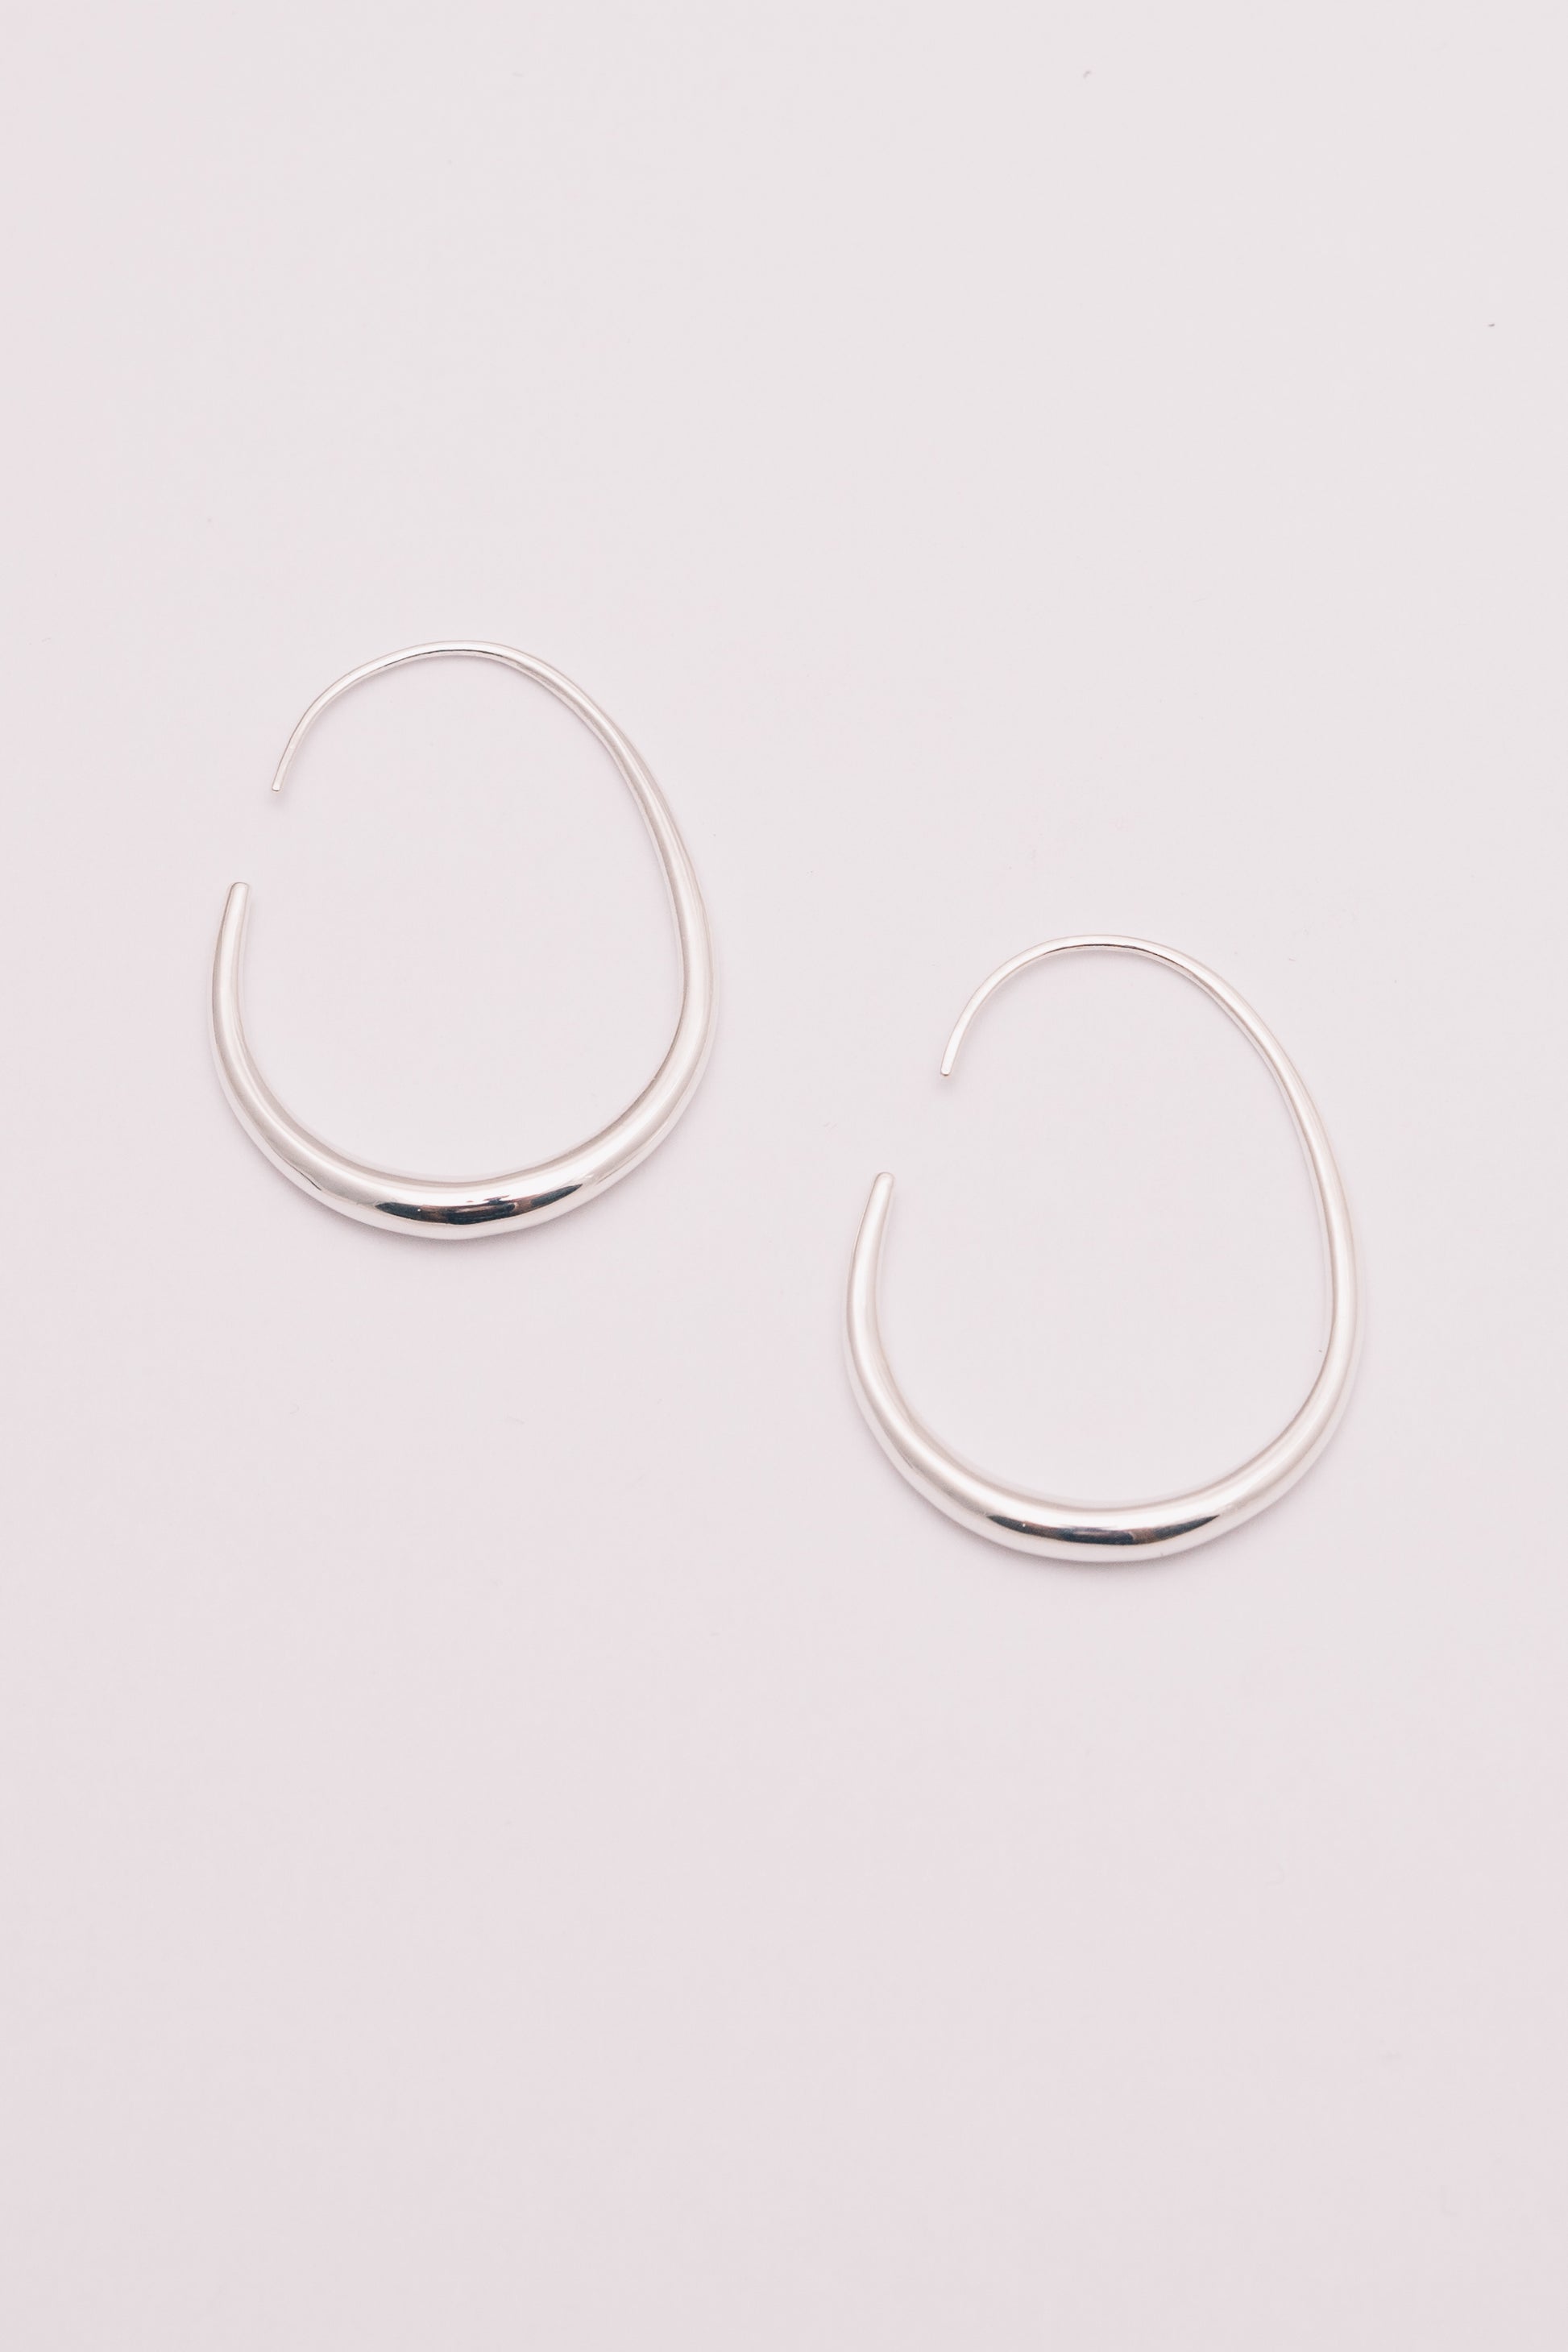 silver threader hoop earrings on white background